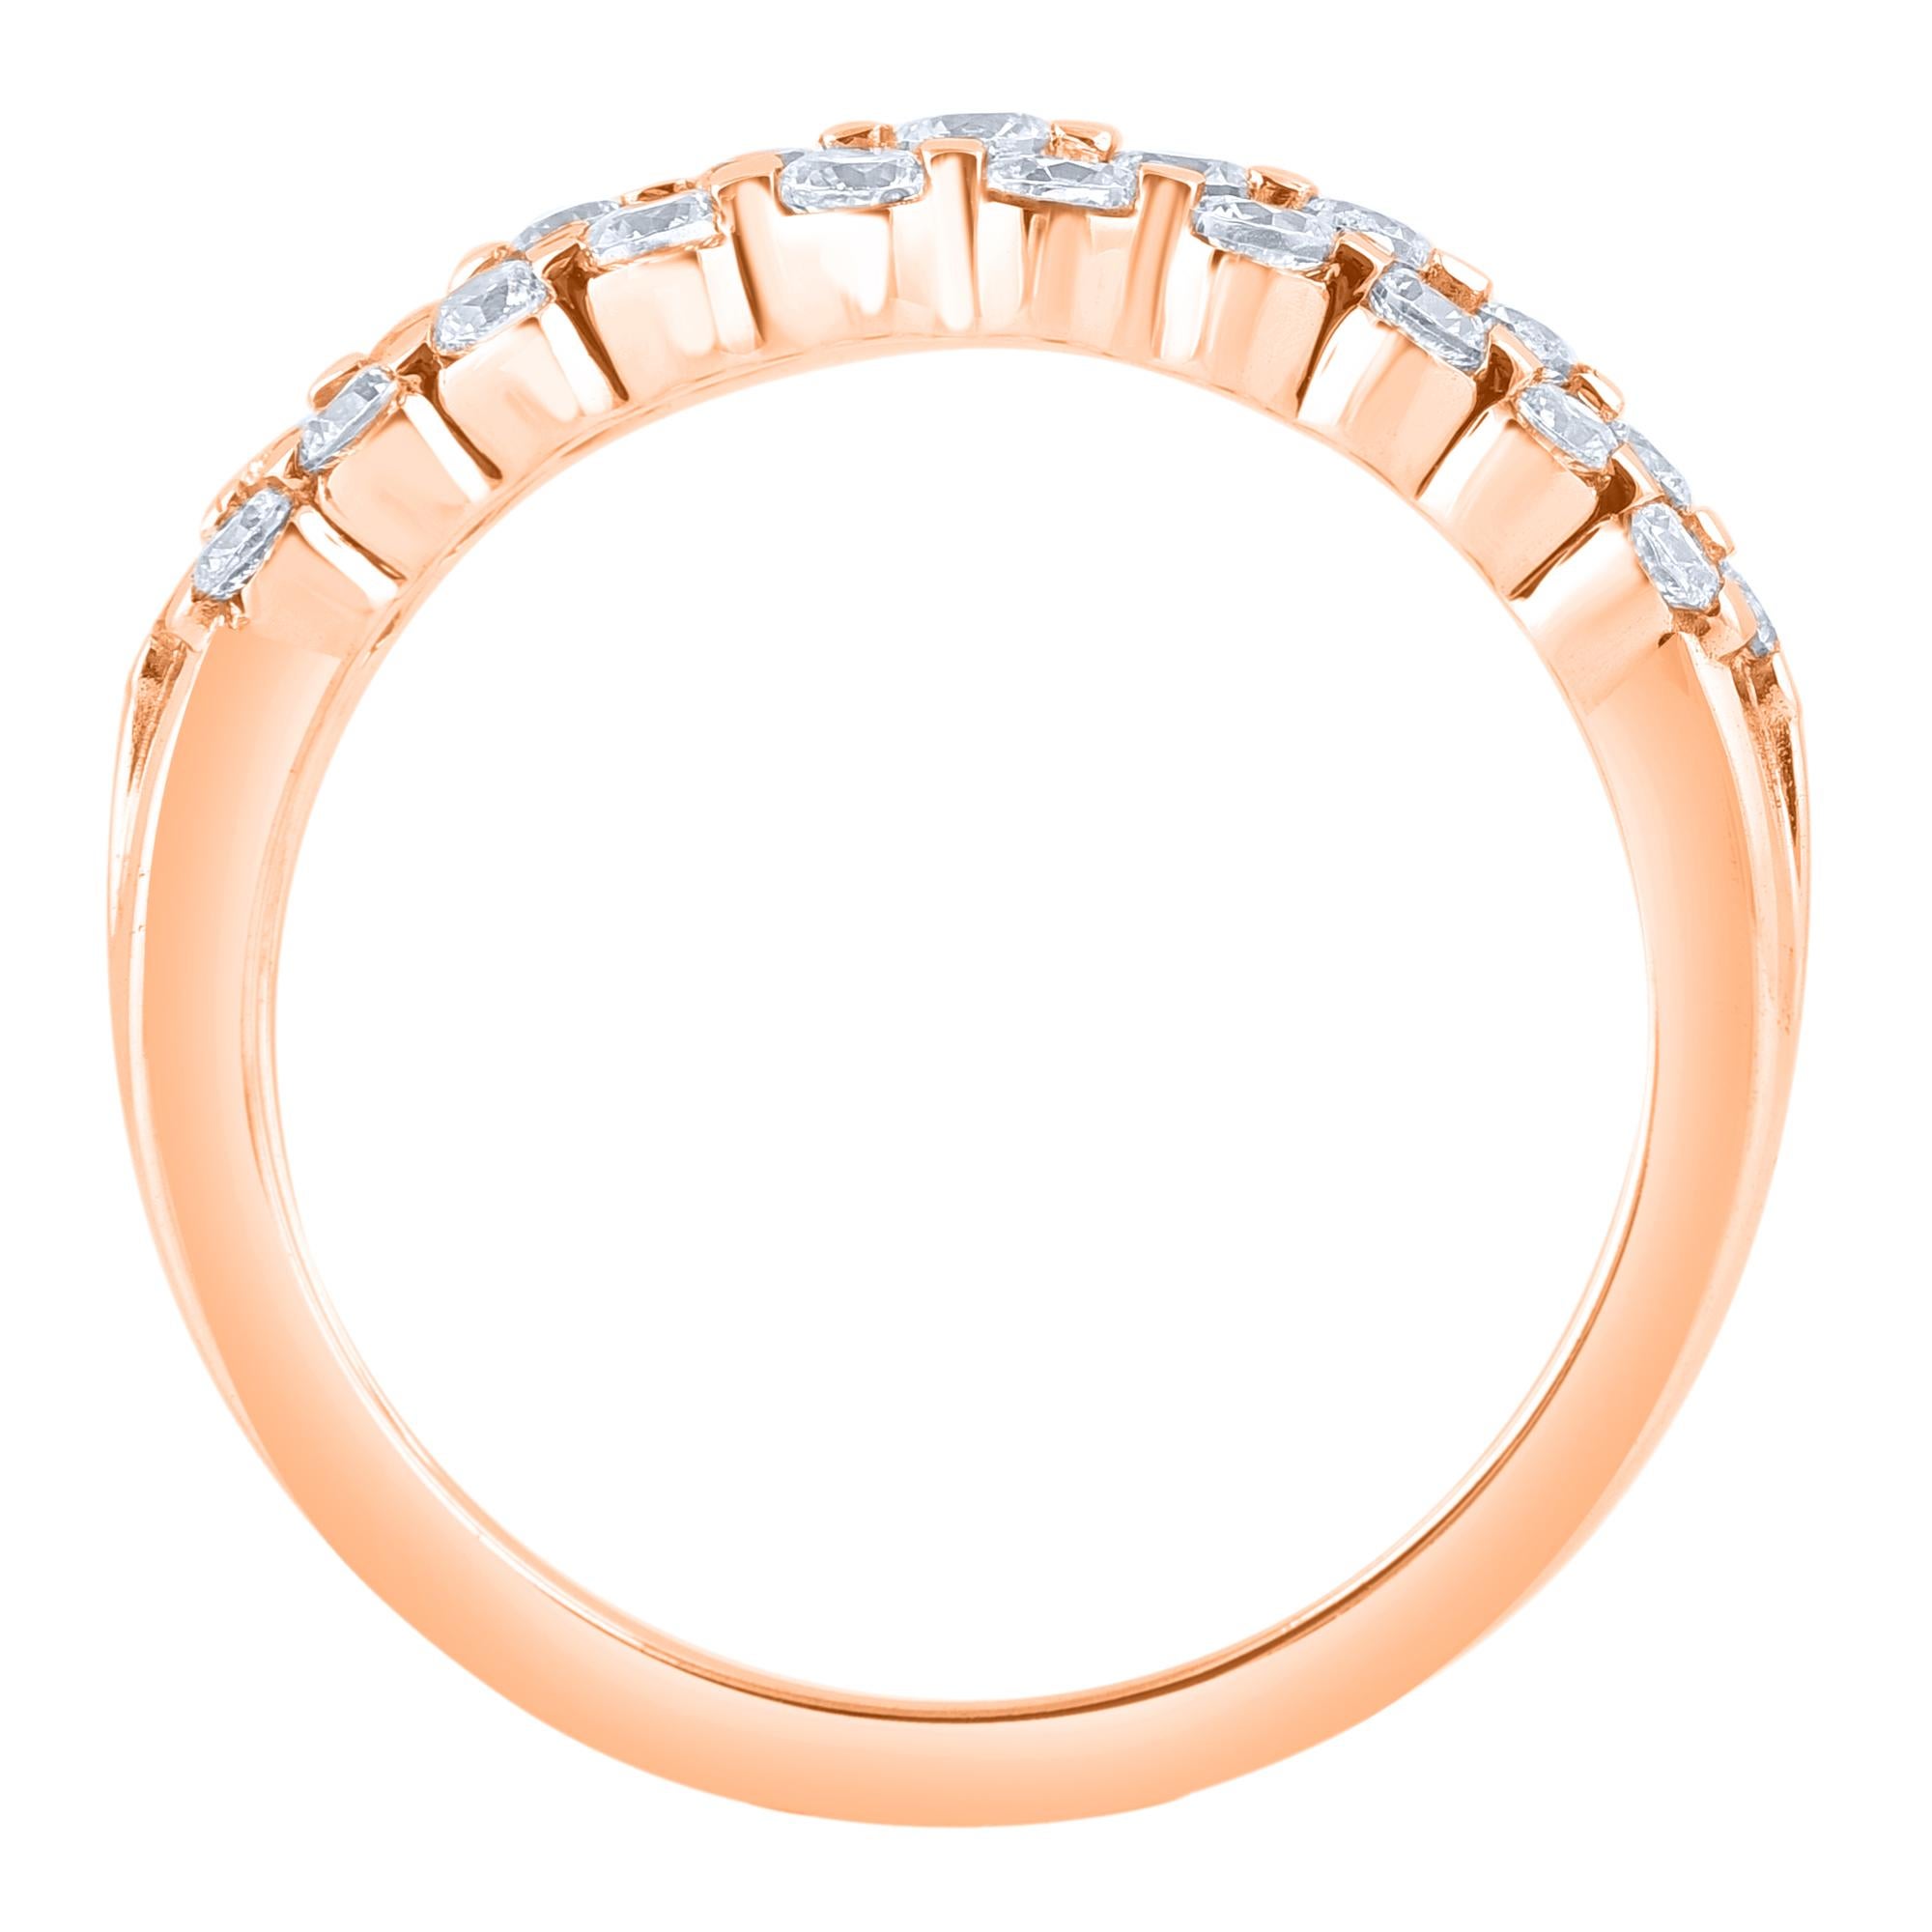 Lassen Sie Ihren schönsten Tag mit diesem Ehering erstrahlen. Von unseren Experten in 14 Karat Roségold gefertigt und mit 31 runden Diamanten im Brillantschliff in einer Kanalfassung verziert. Das Gesamtgewicht der Diamanten beträgt 1,0 Karat. Die